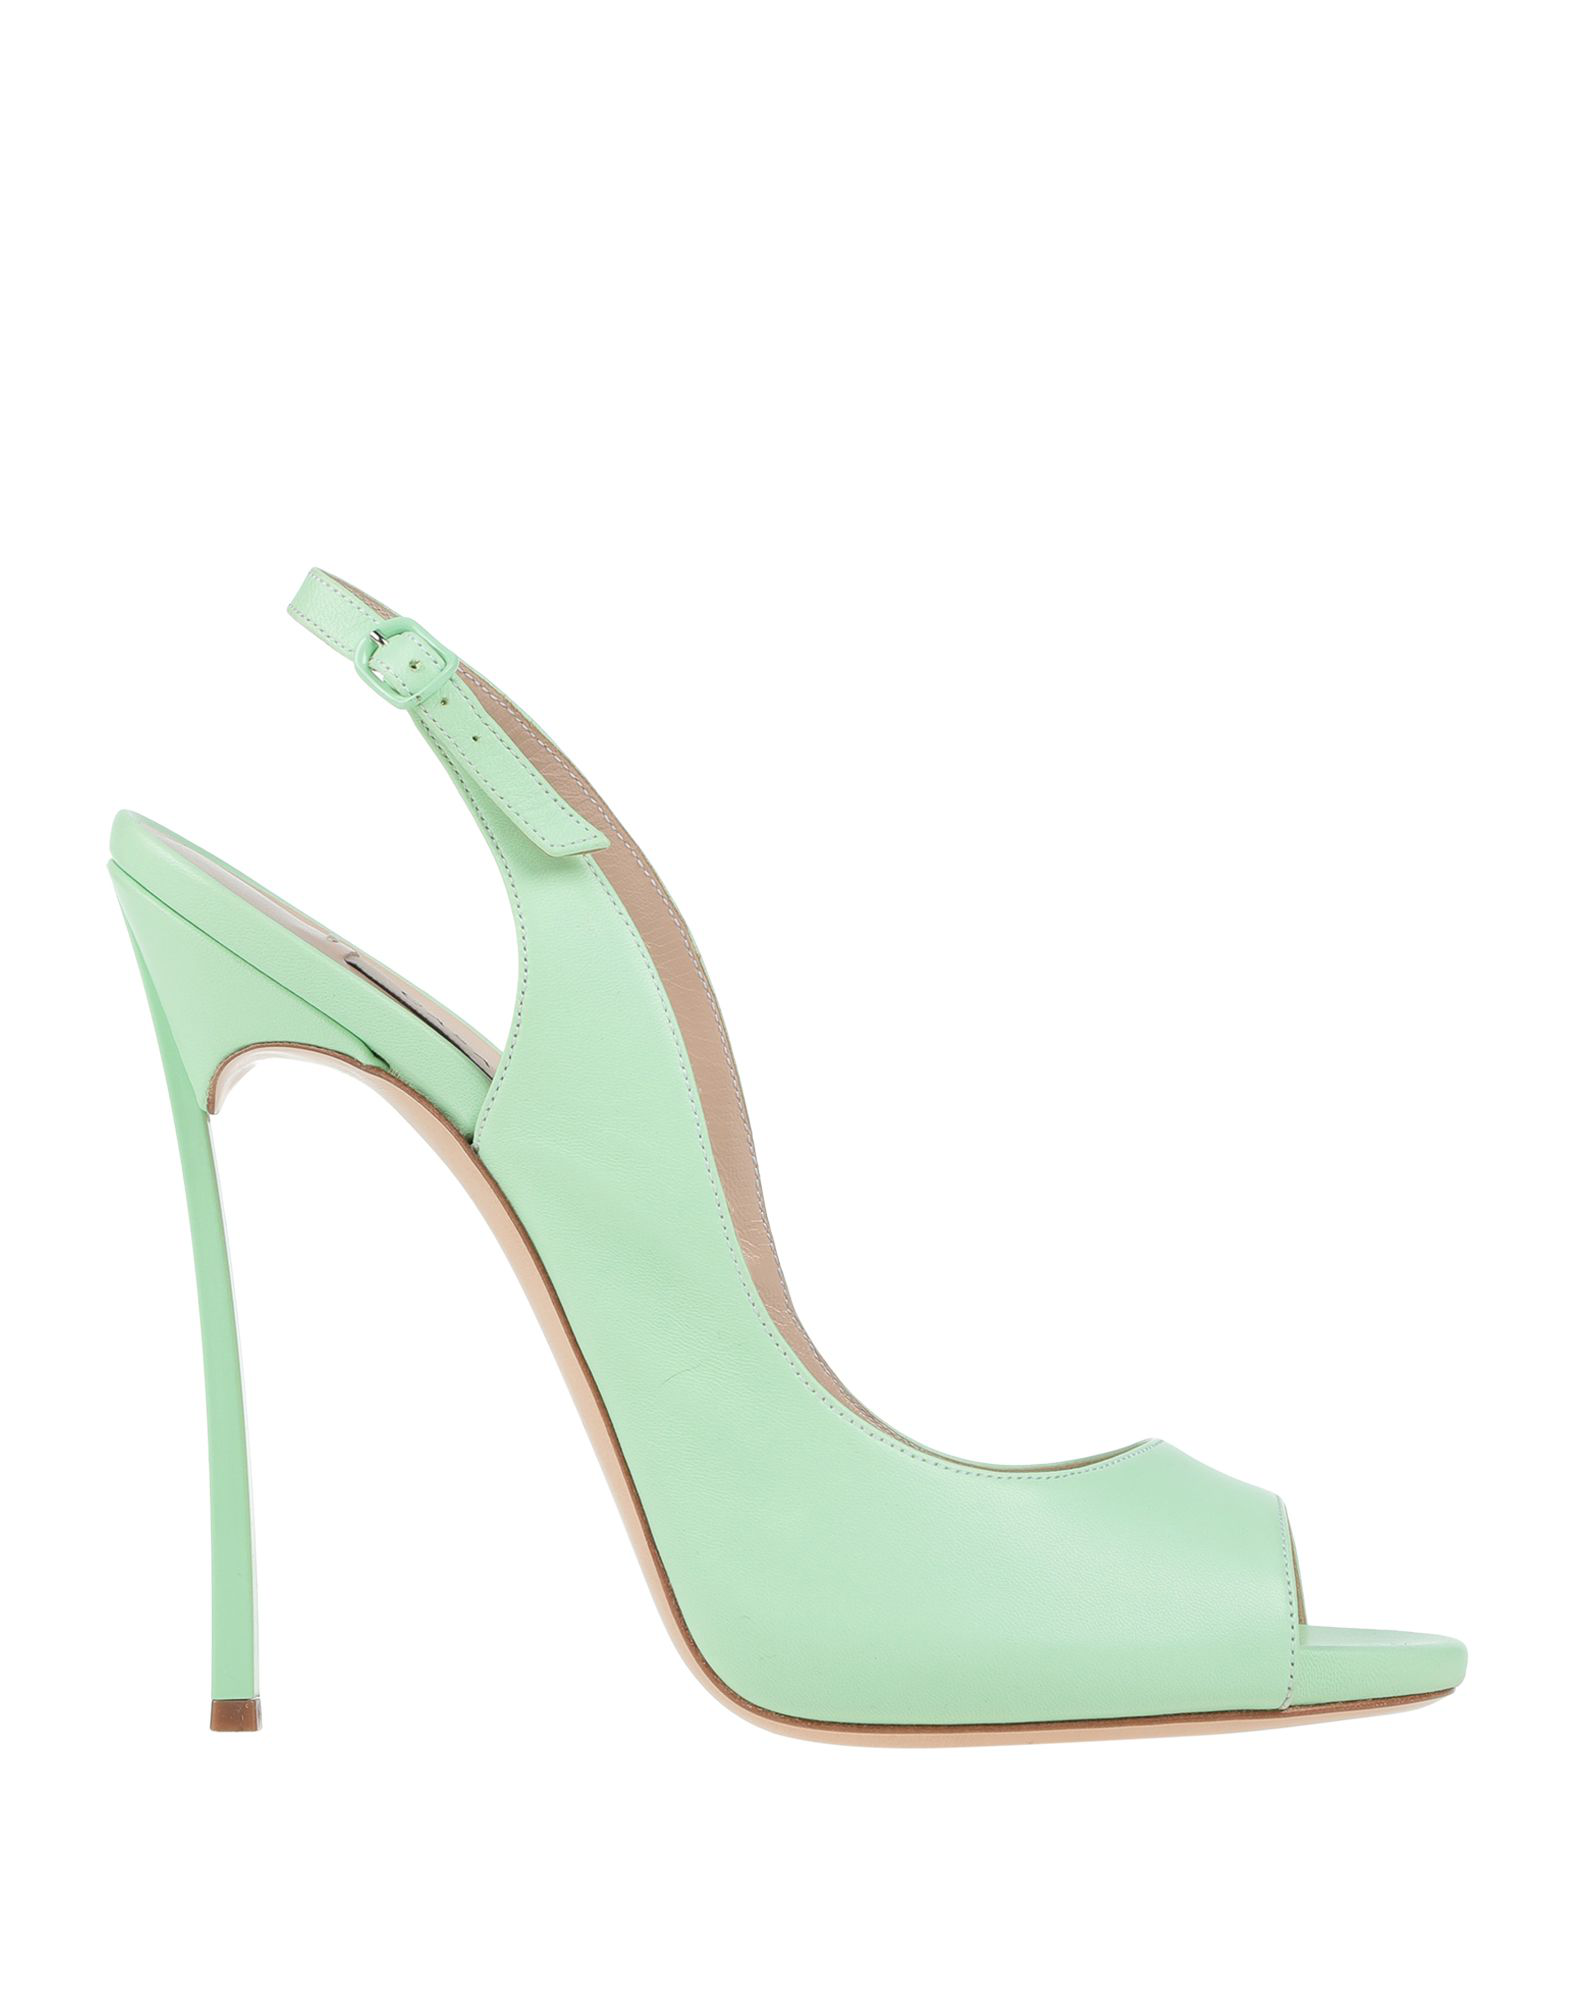 Casadei Sandals In Light Green | ModeSens